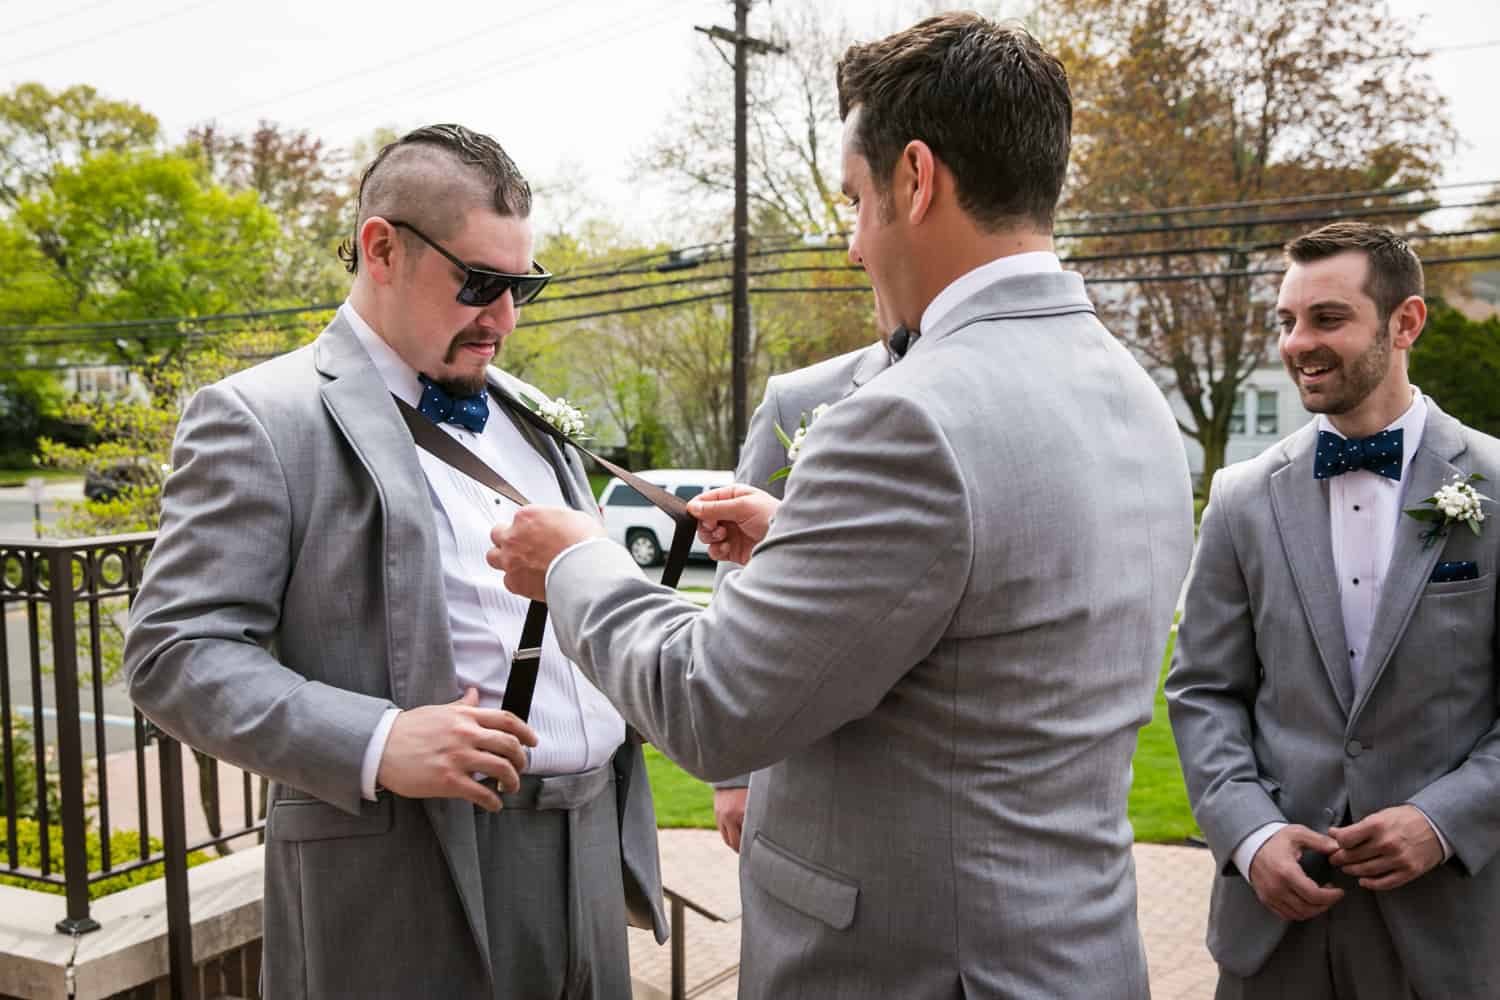 Groom snapping suspenders of groomsman wearing sunglasses